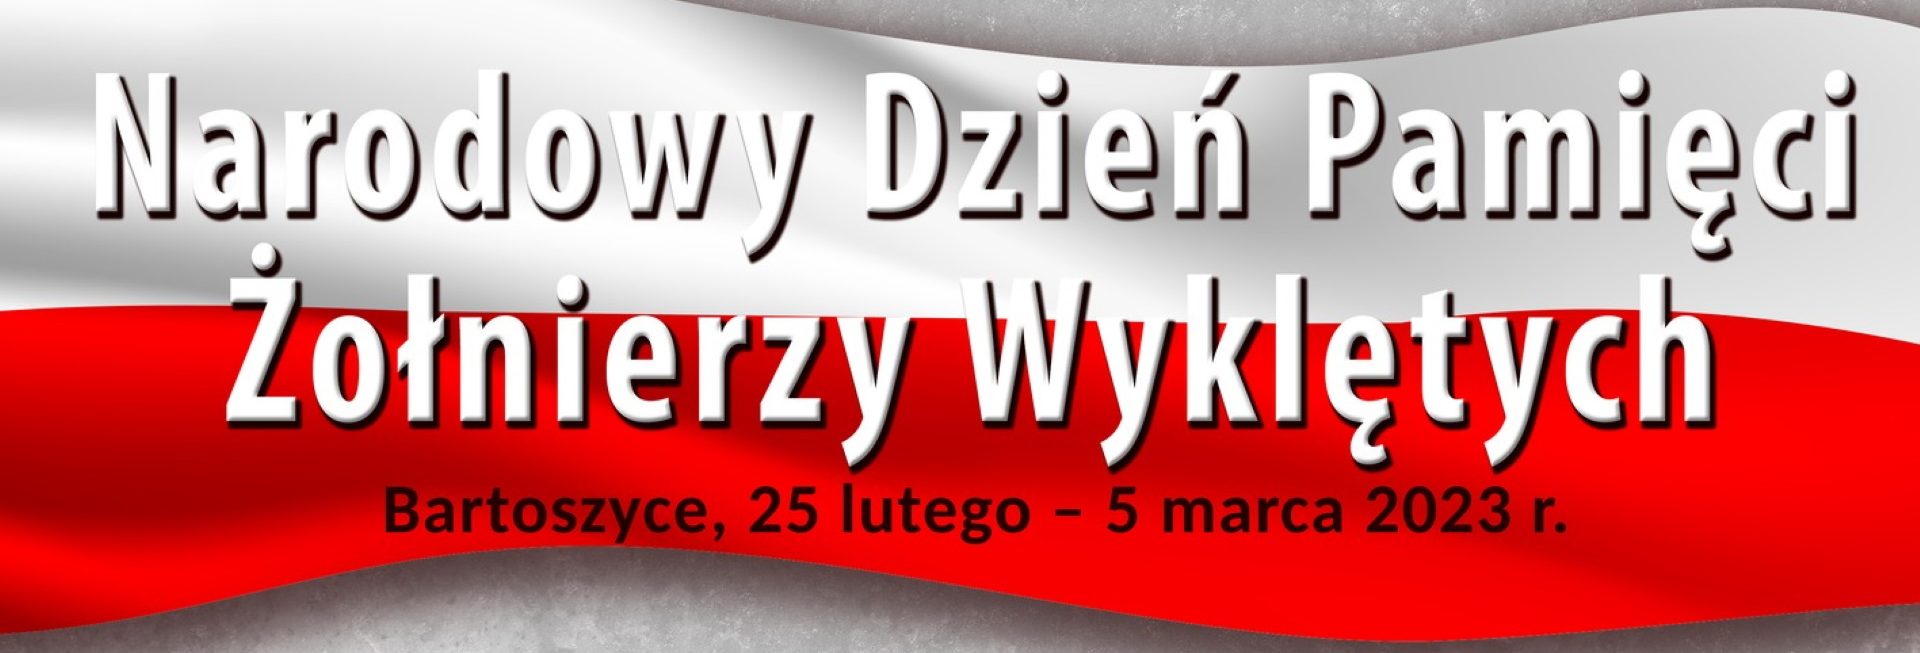 Plakat zapraszający w dniach od 25 lutego do 5 marca 2023 r. do Bartoszyc na Narodowy Dzień Pamięci Żołnierzy Wyklętych Bartoszyce 2023.